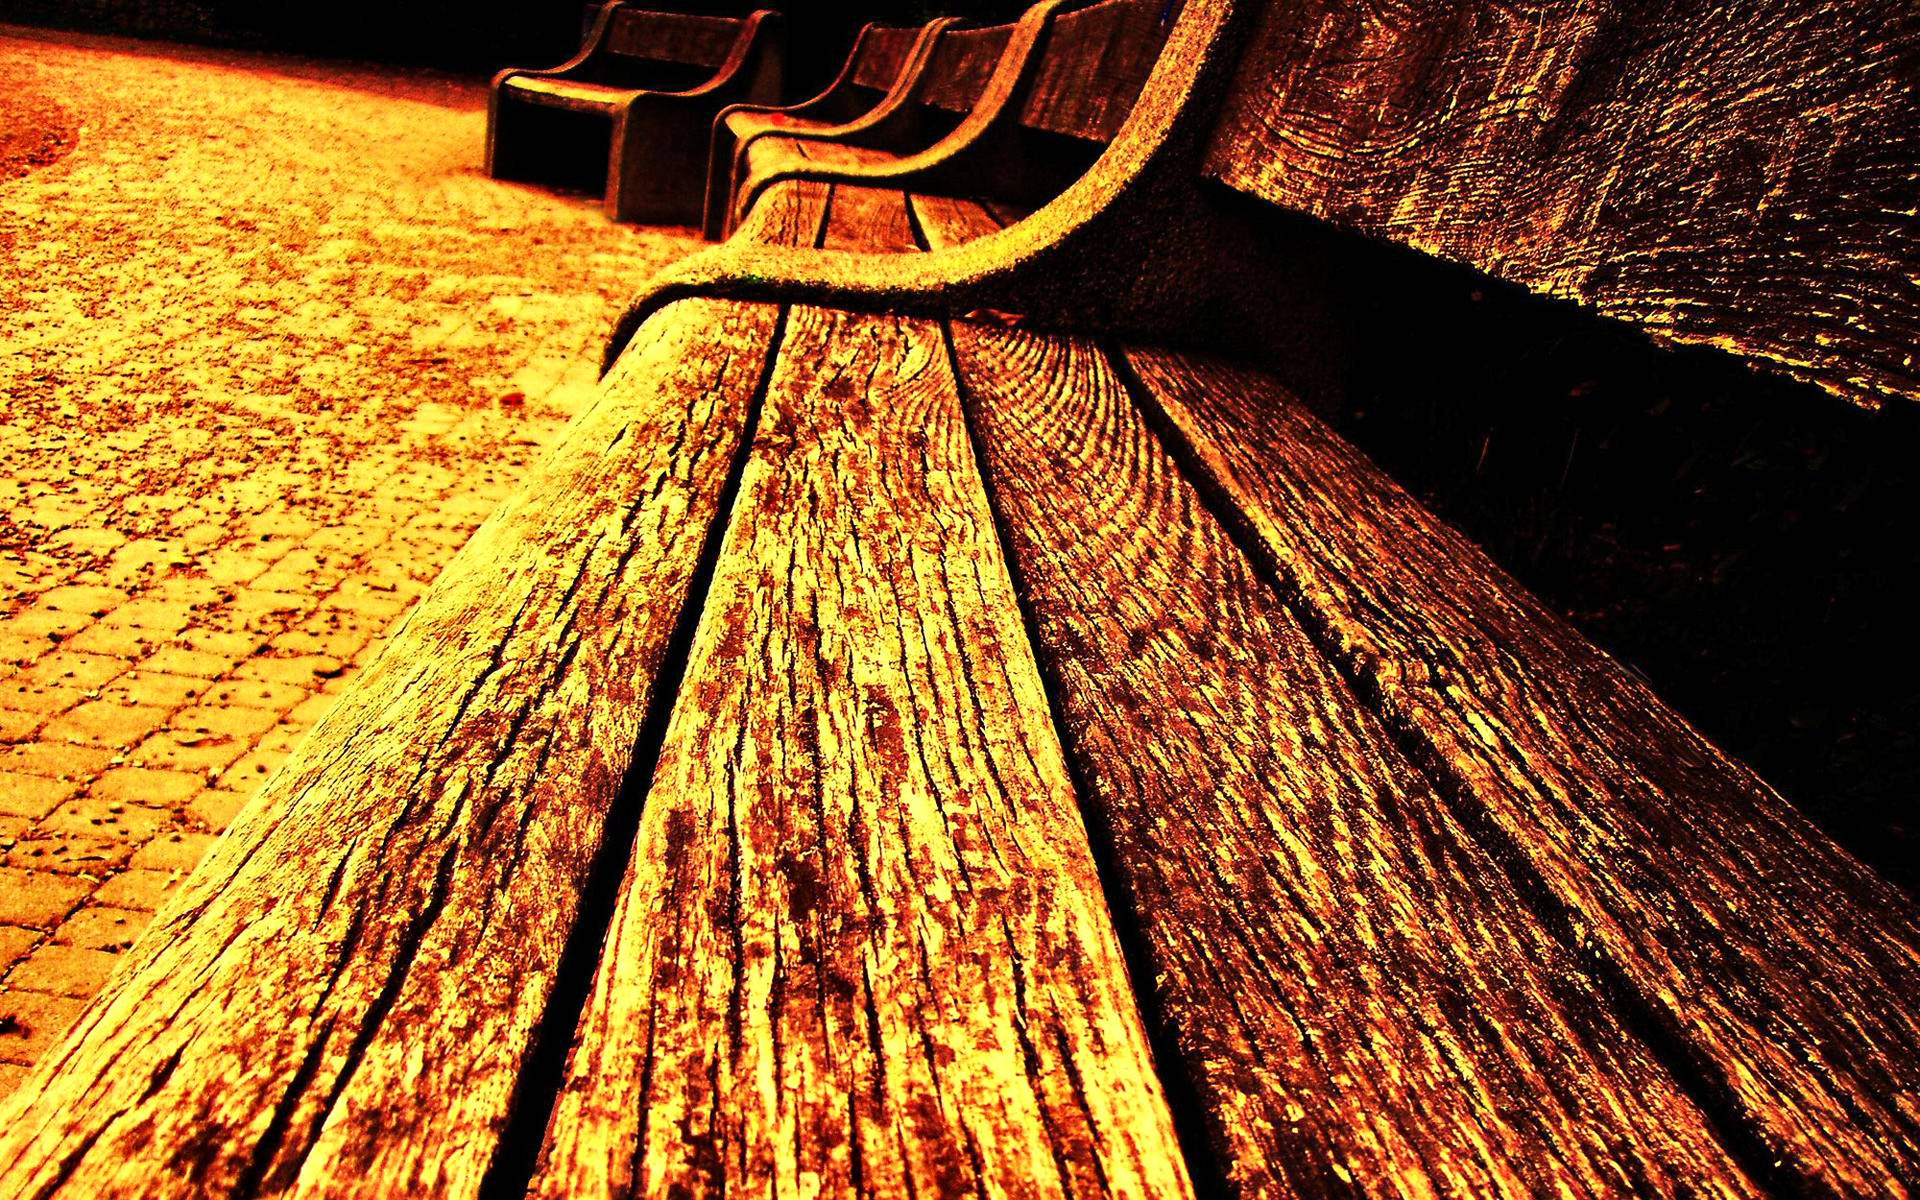 Rustic Yellow Bench On Wooden Floor